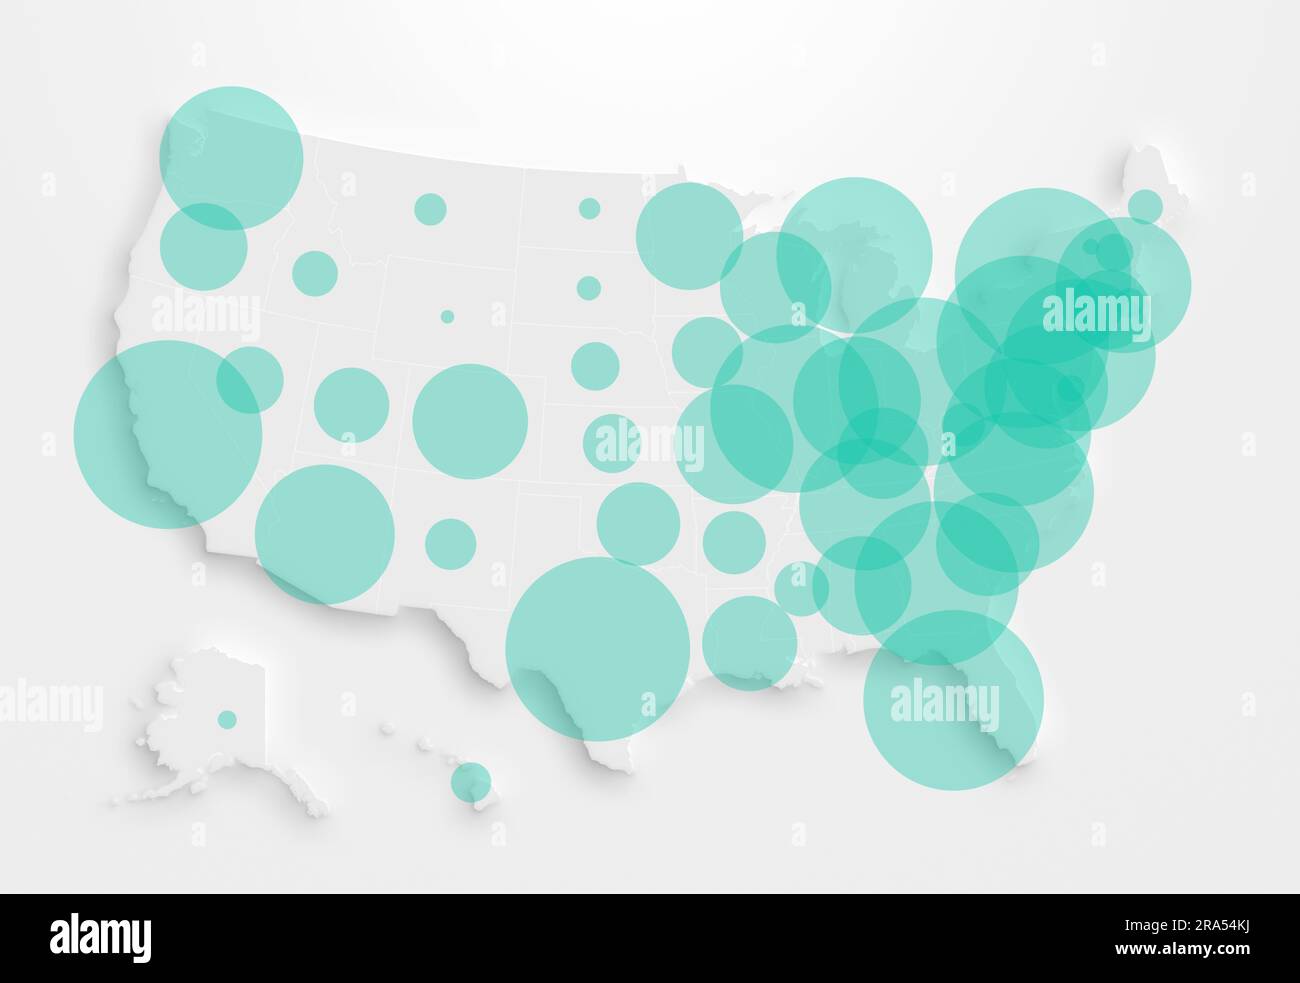 Karte der Vereinigten Staaten von Amerika (USA, Amerika) mit türkisfarbenen transparenten Kreisen, die die Bevölkerung in jedem Staat repräsentieren. Stockfoto